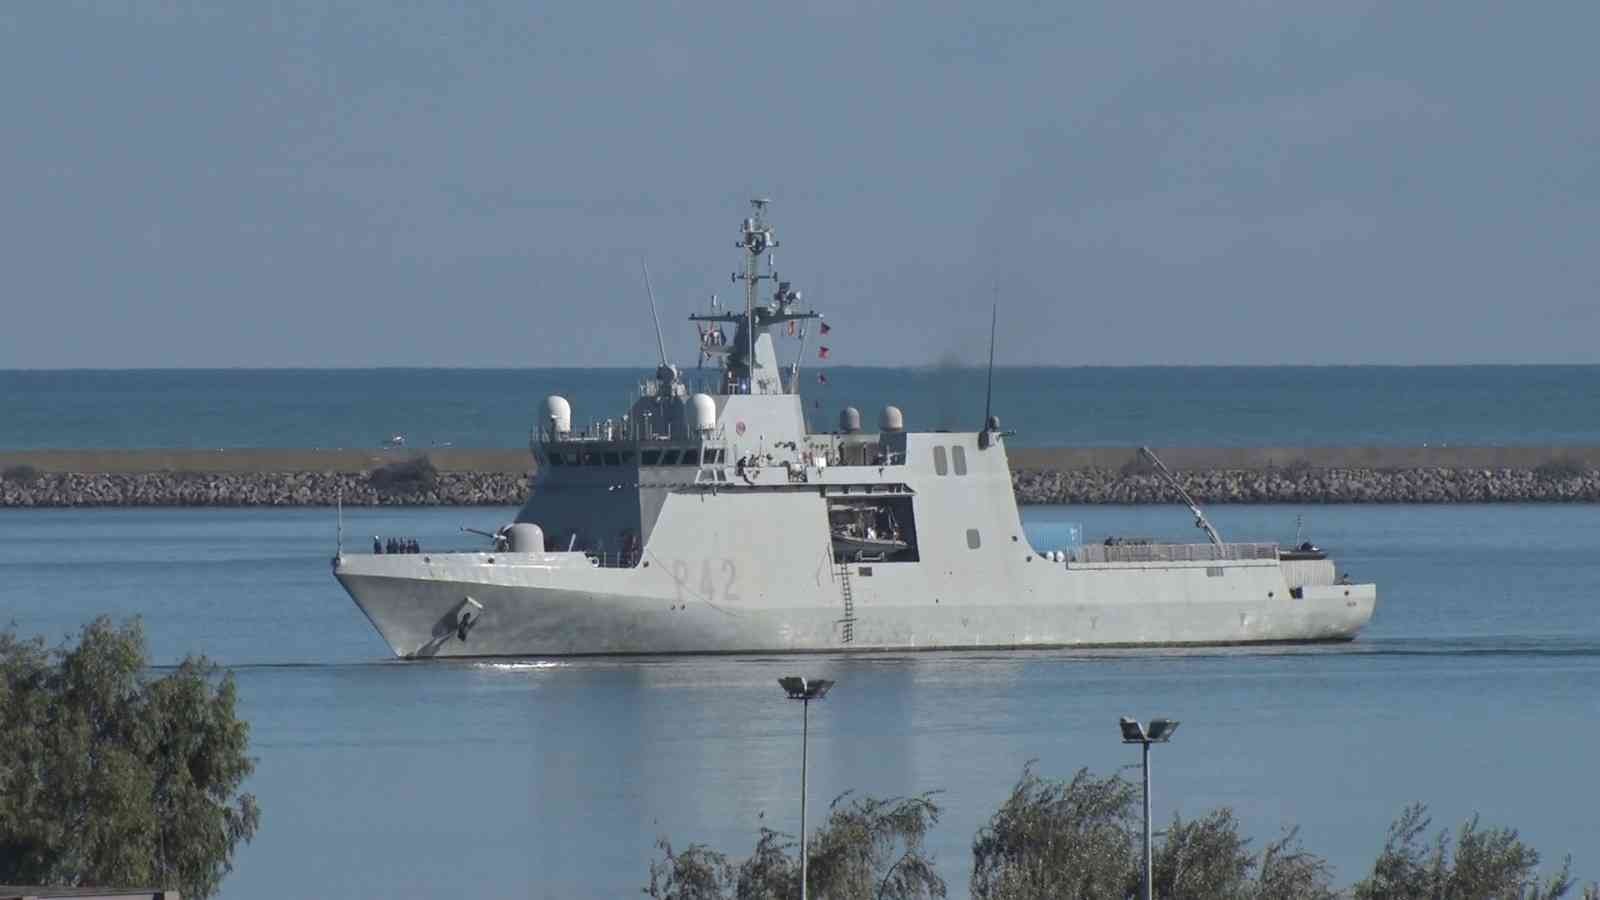 NATO’nun 5 savaş gemisi Samsun’da #samsun